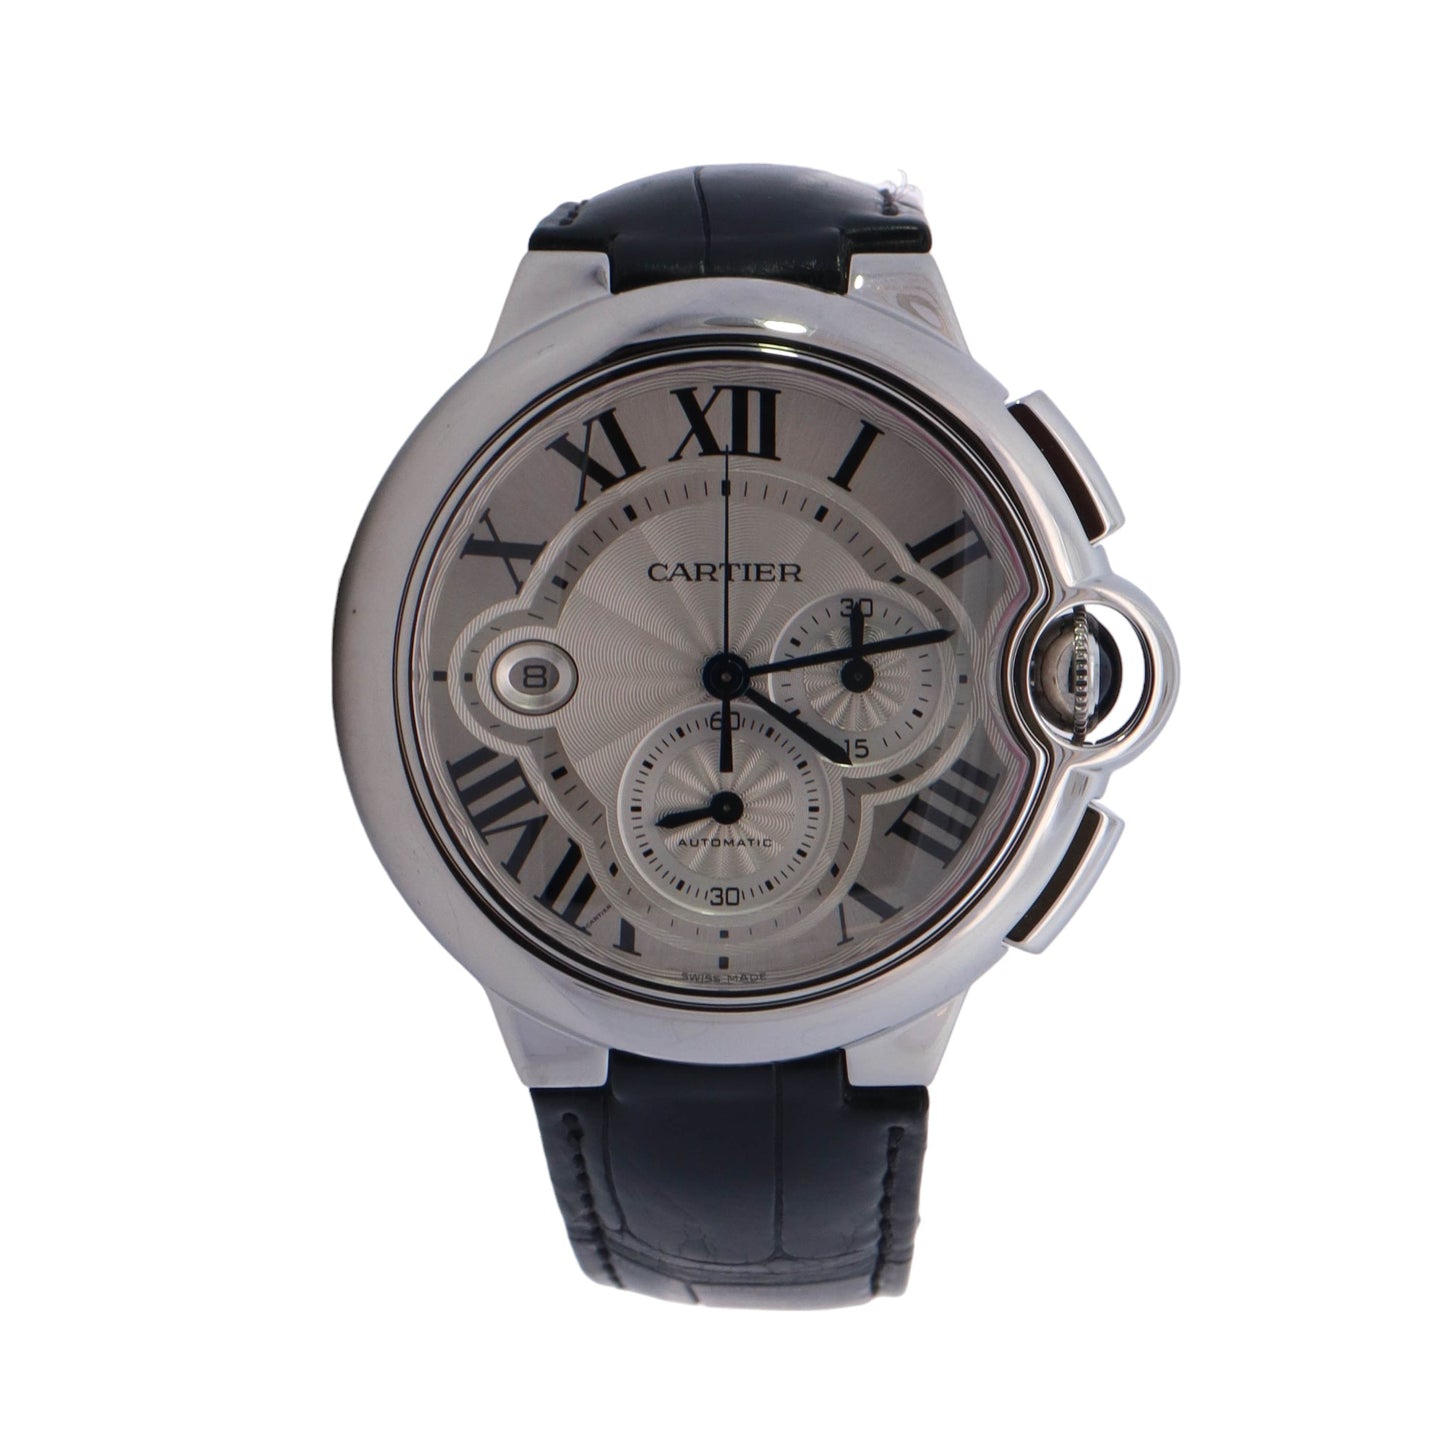 Cartier Ballon Bleu White Gold 44mm White Roman Dial Watch Reference# W6920078